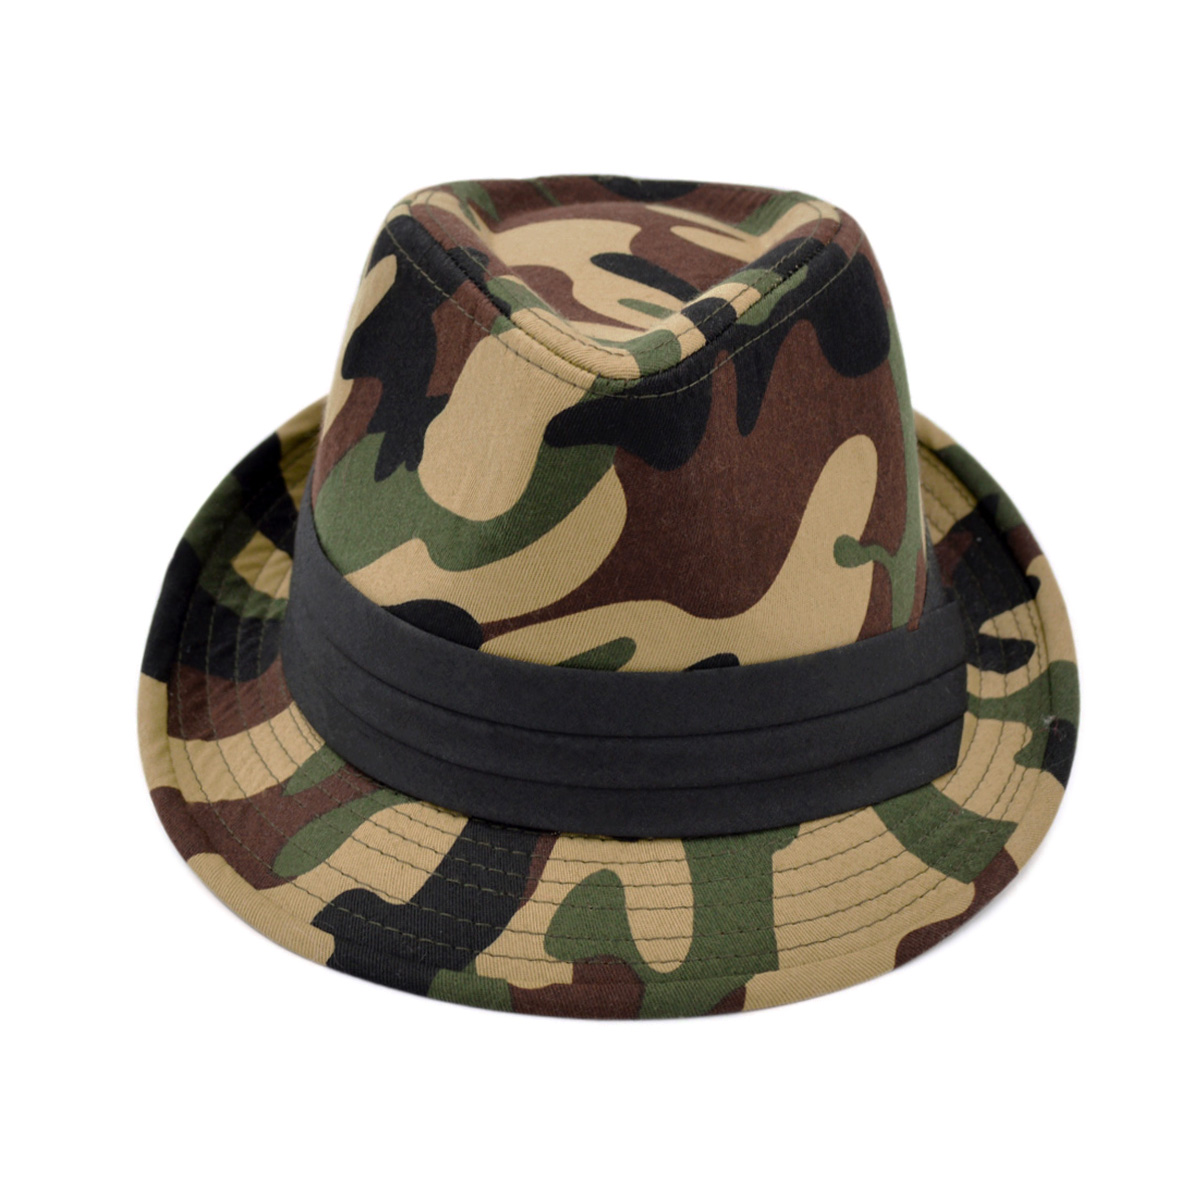 Premium Unisex Camouflage Black Band Fedora Hat - image 3 of 4